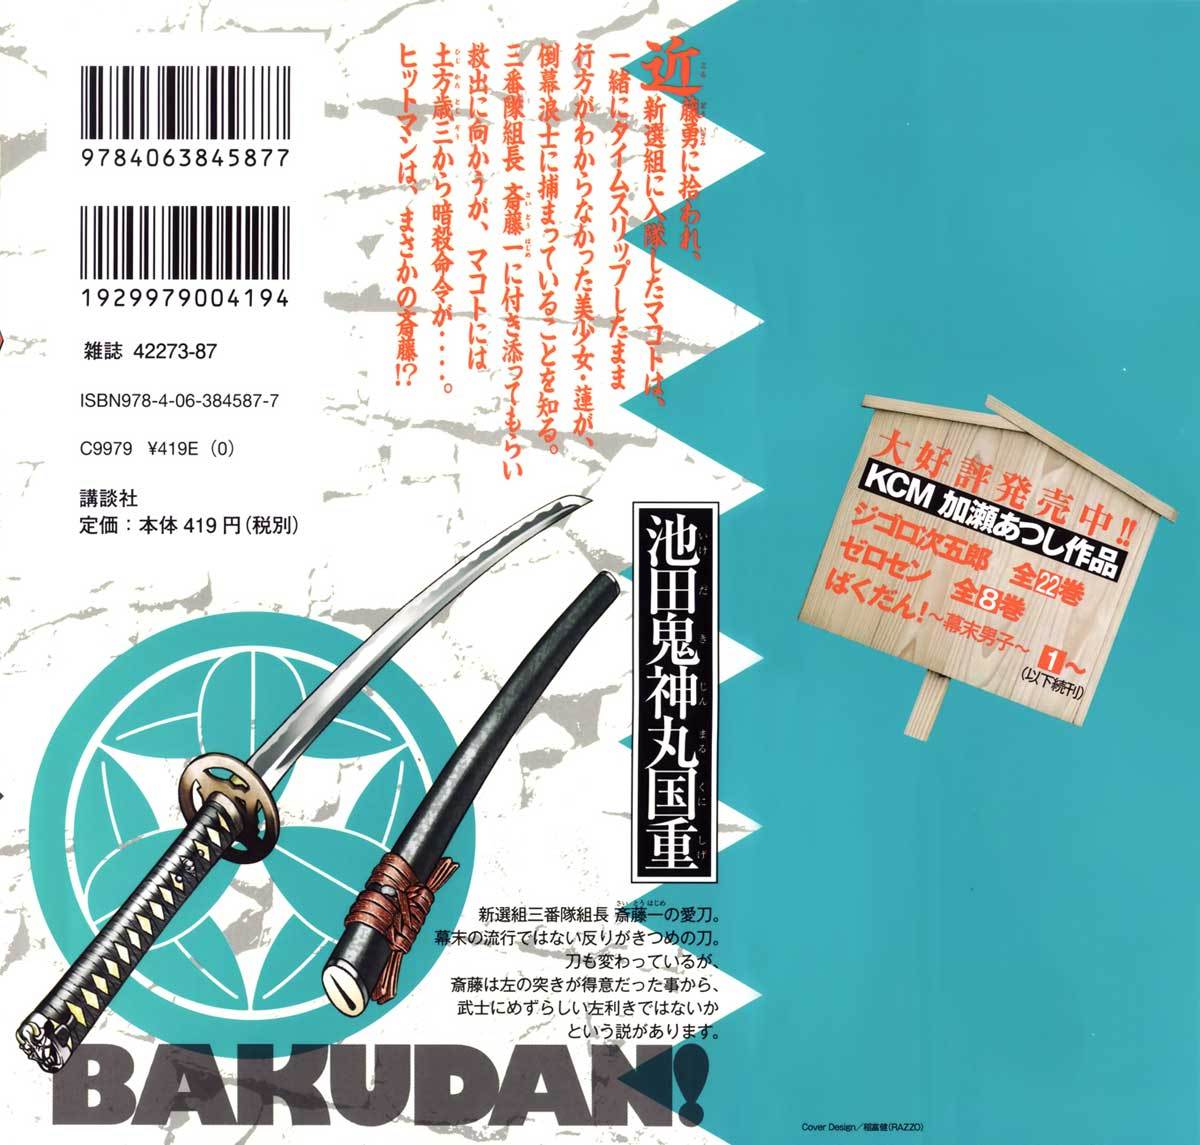 Bakudan! – Bakumatsu Danshi Chapter 7